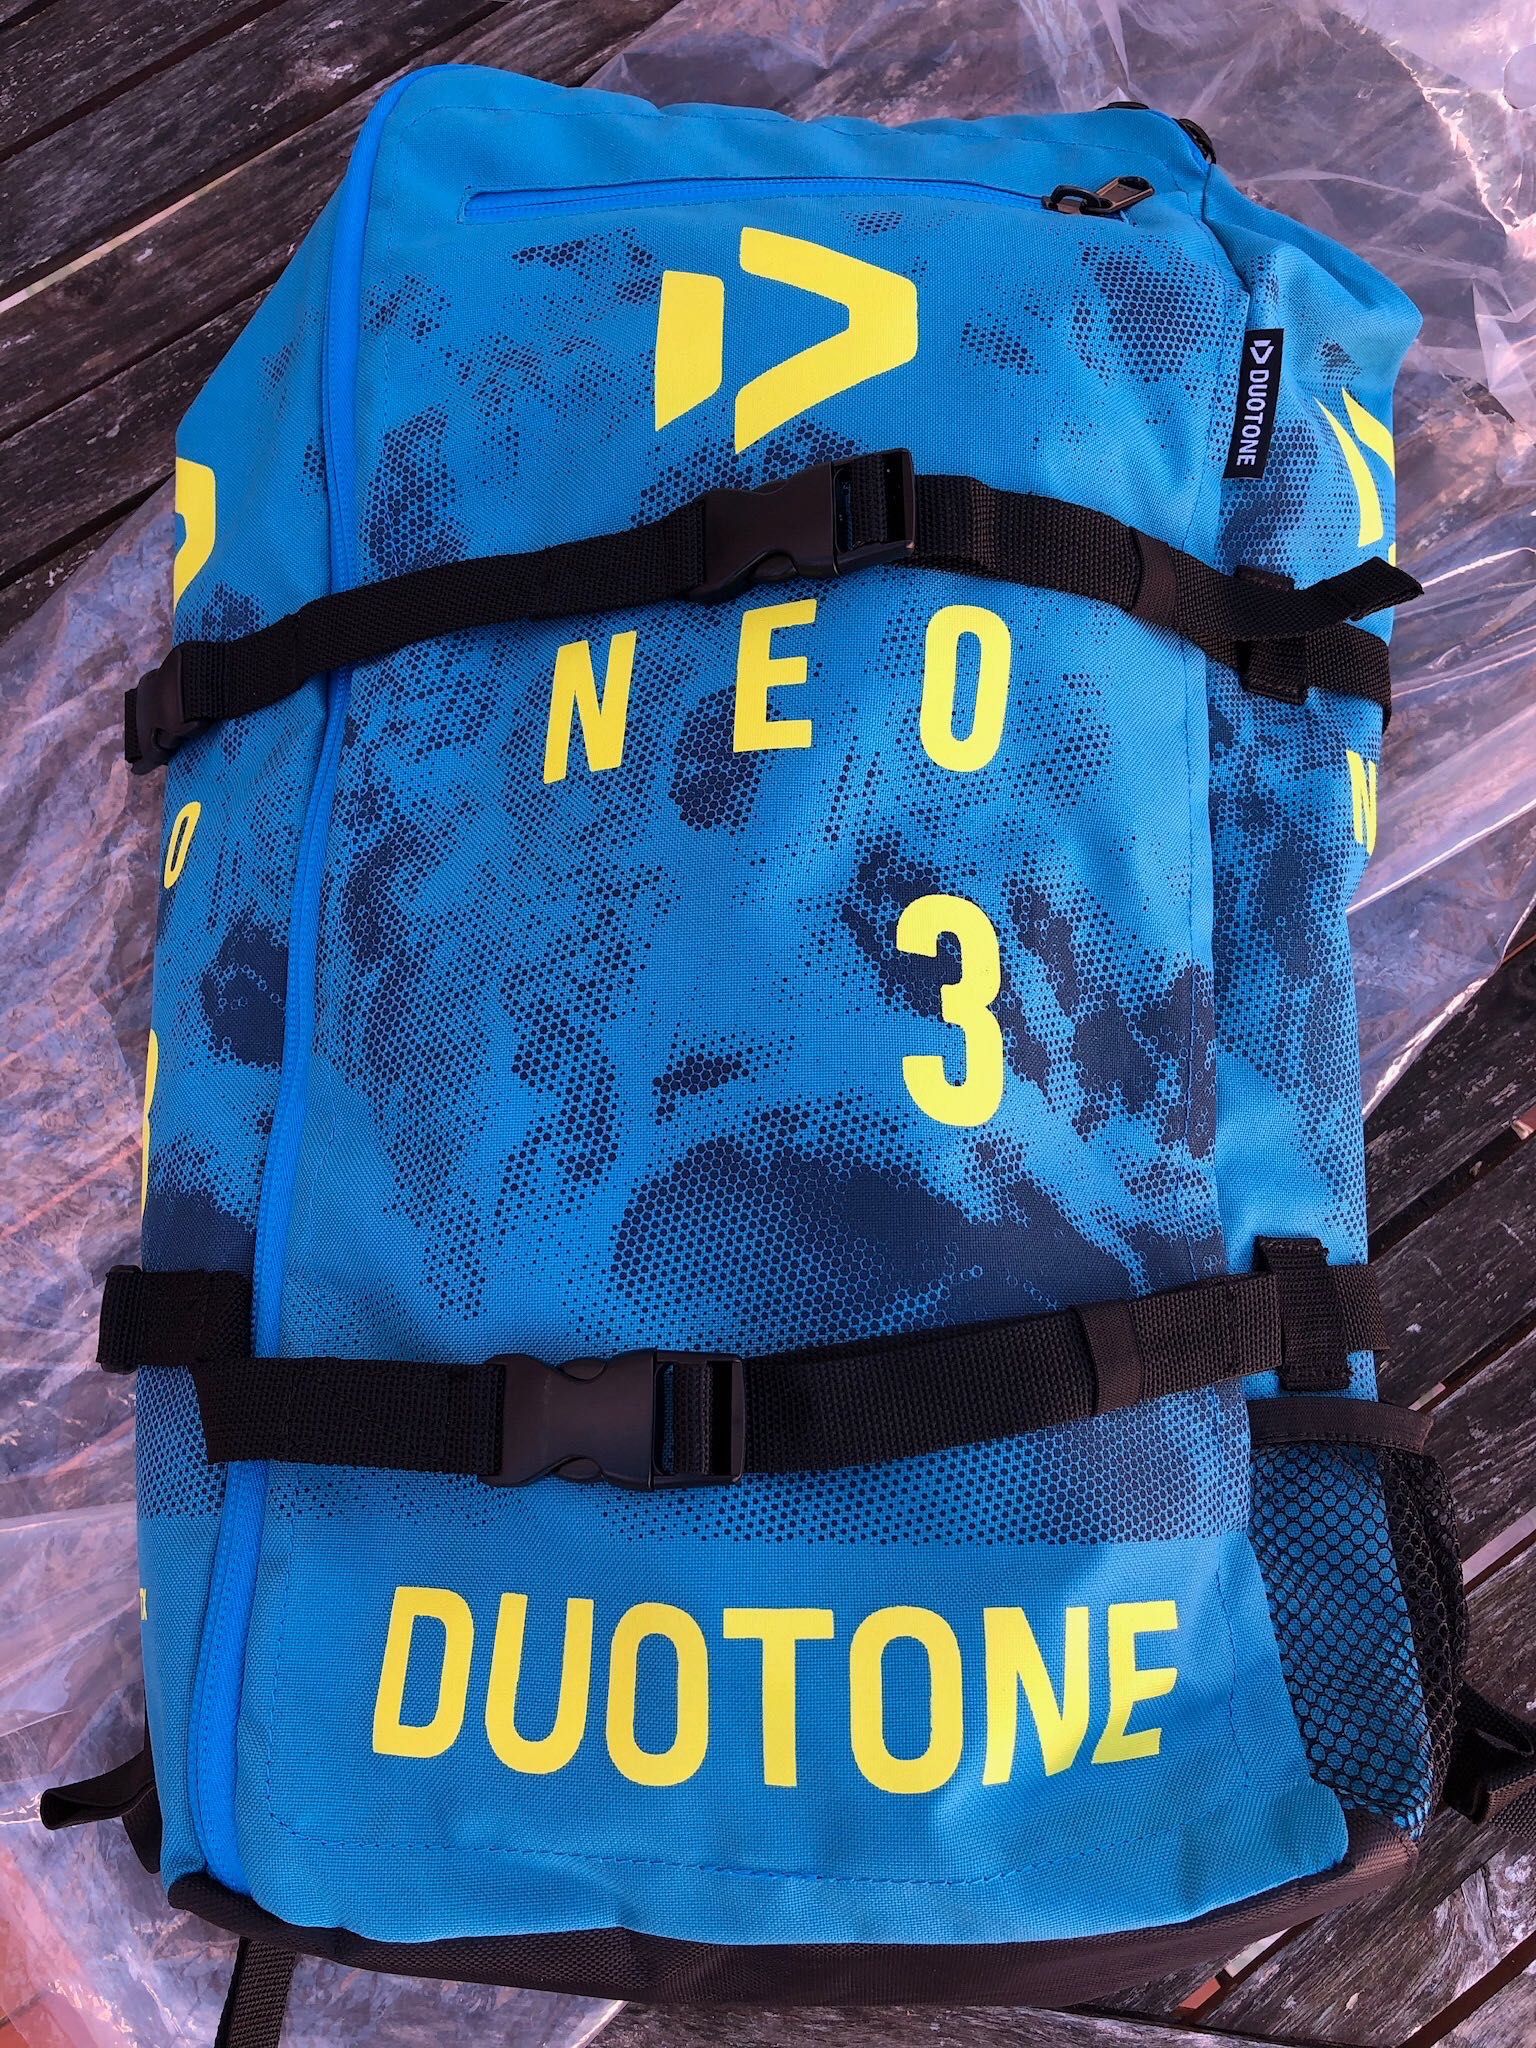 Kite Duotone Neo 2019 de 3m, novo